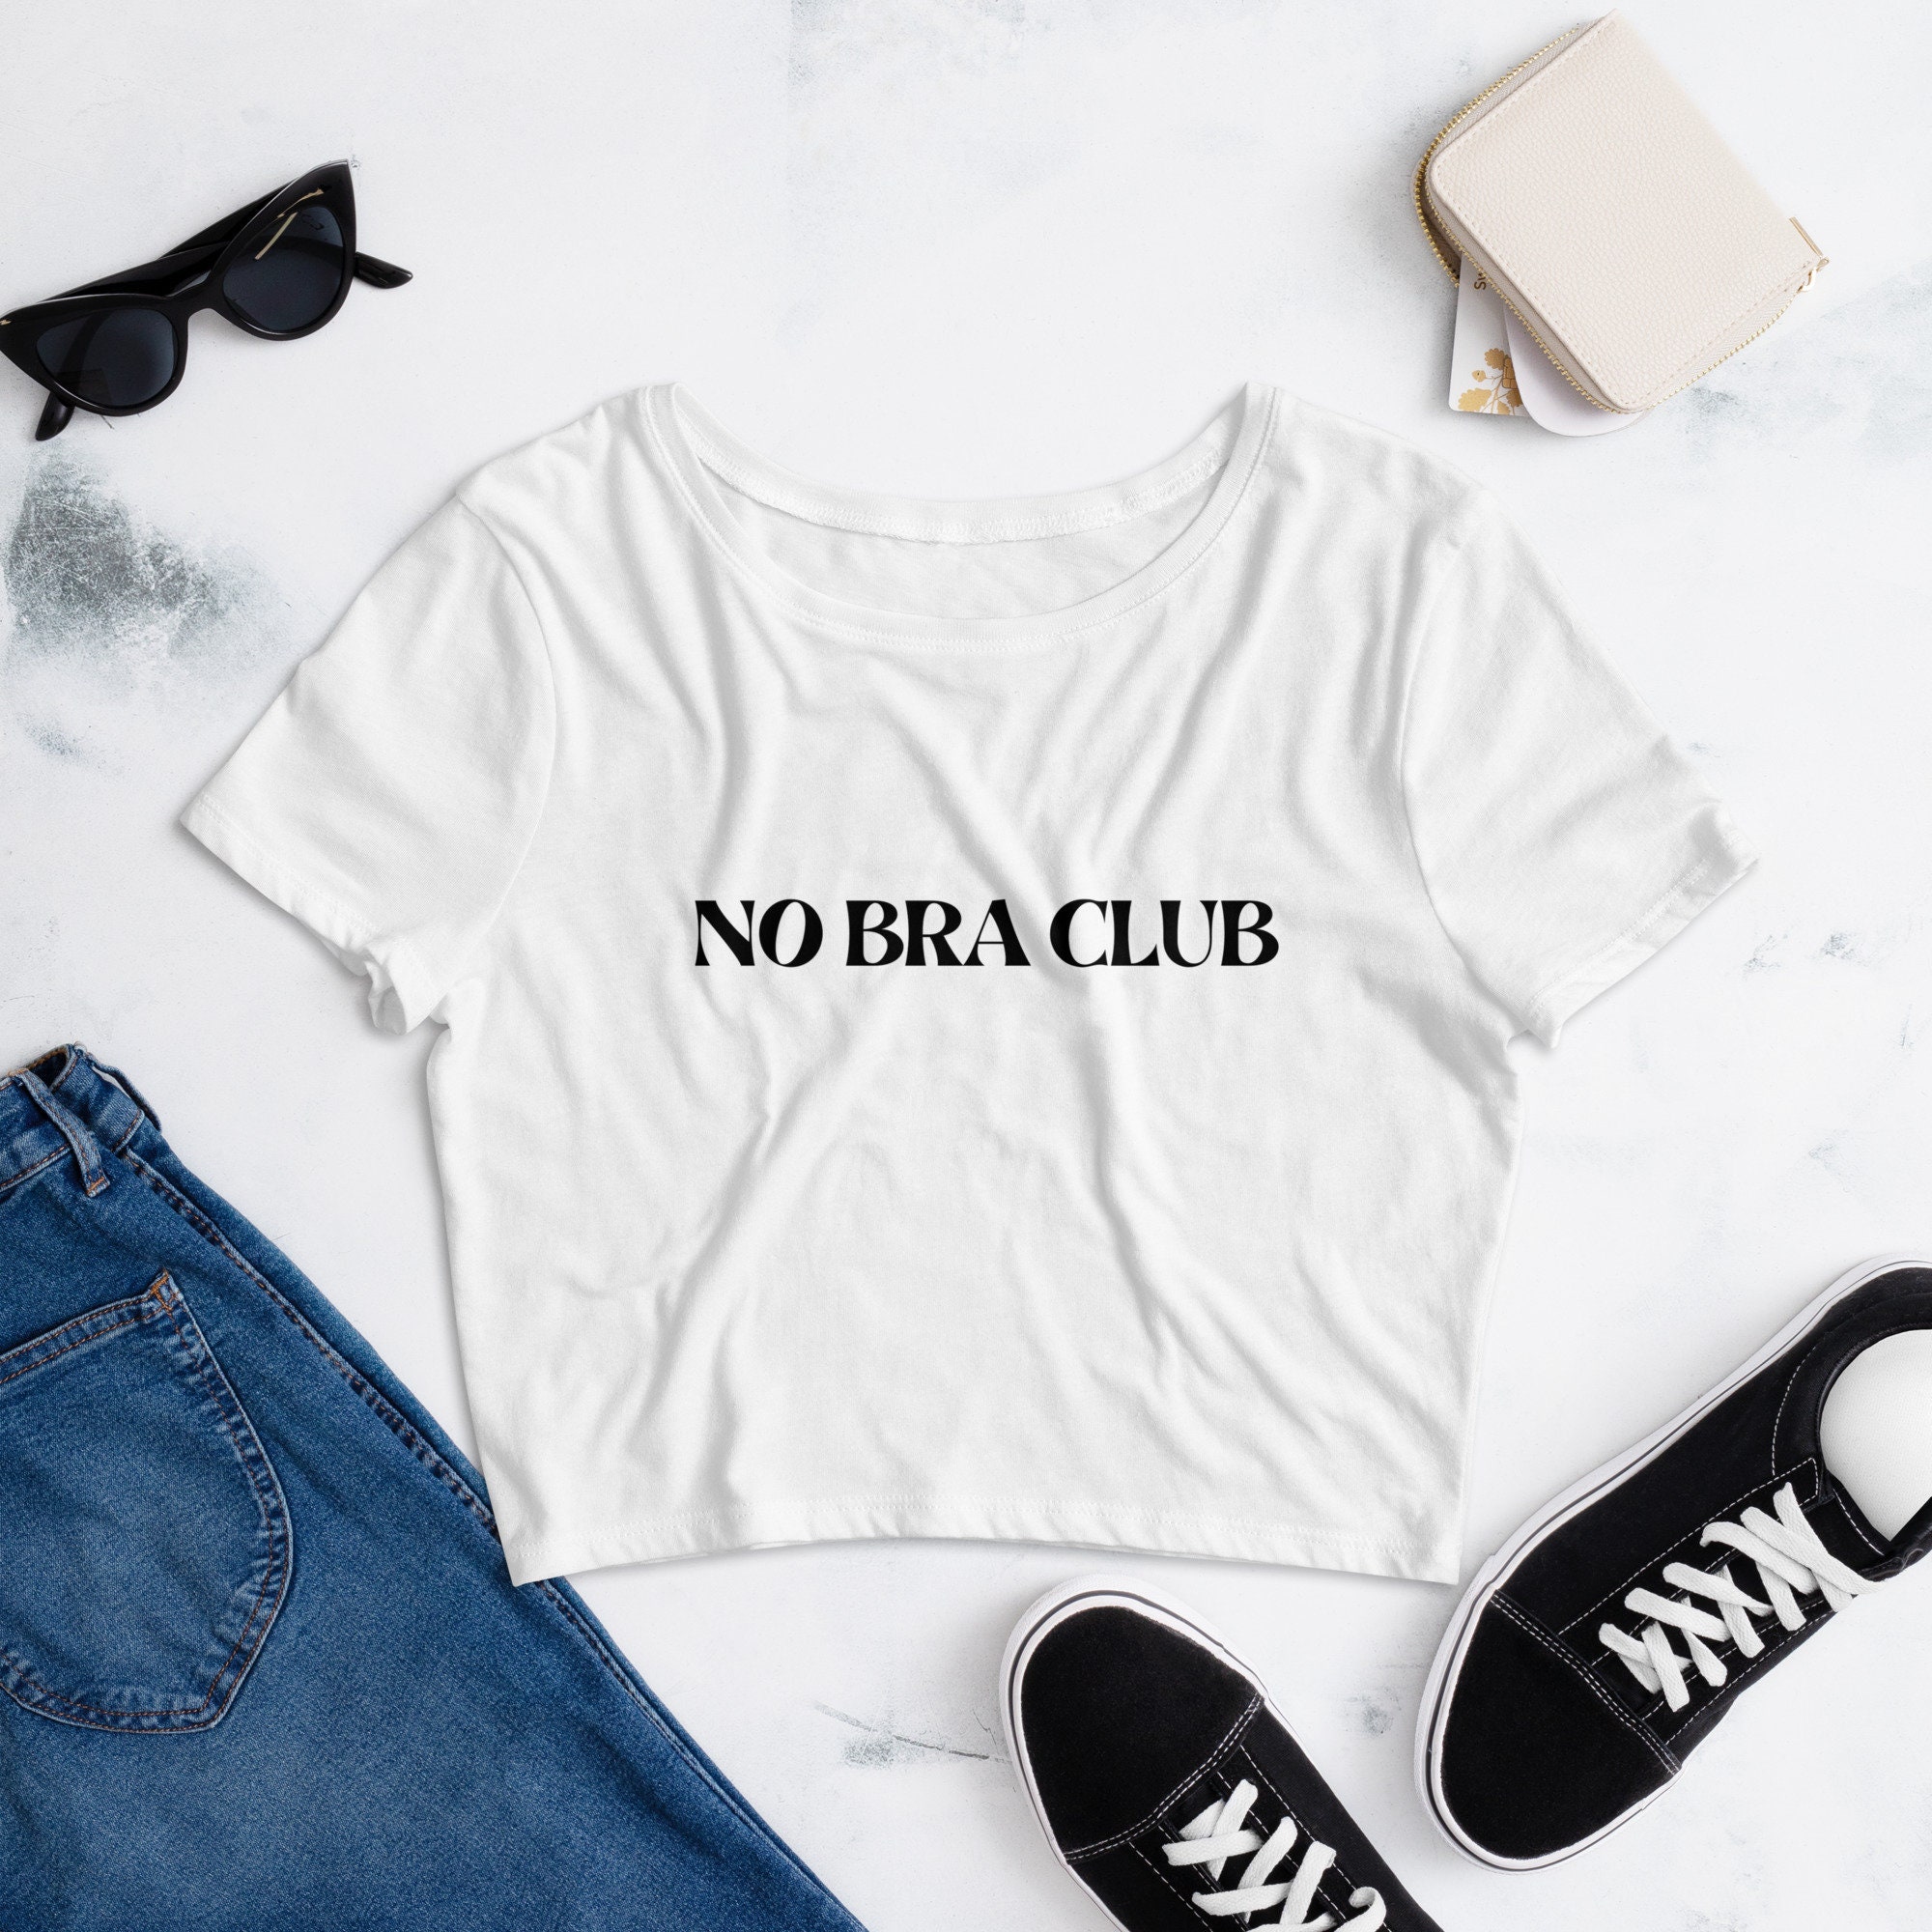 New no BRA Club Shirt, Feel Free & Sensational. 